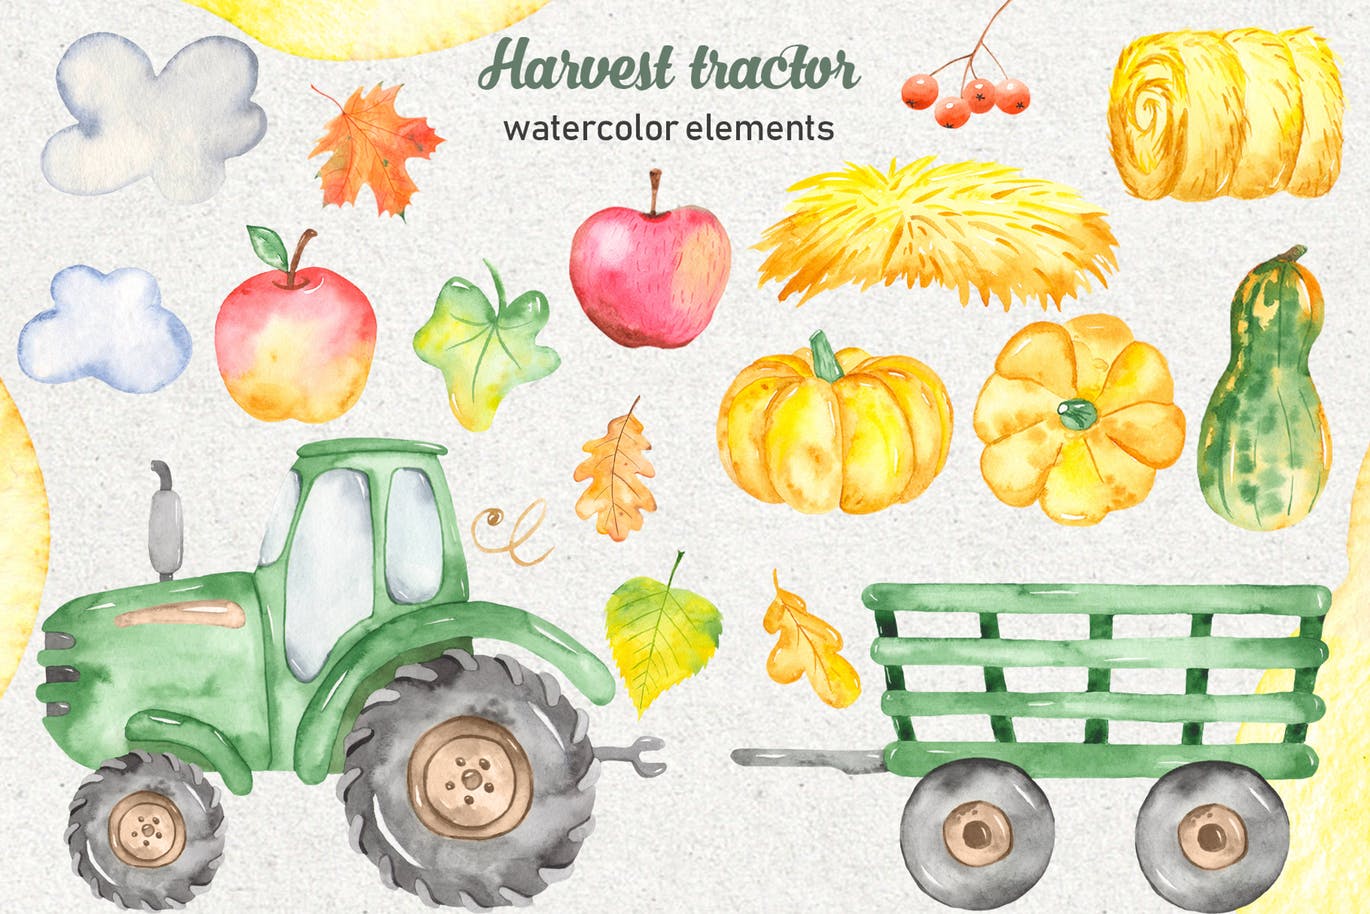 拖拉机农场收获季节主题水彩手绘剪贴画/卡片/无缝图案背景素材 Watercolor harvest tractor Clipart, cards, pattern插图(1)